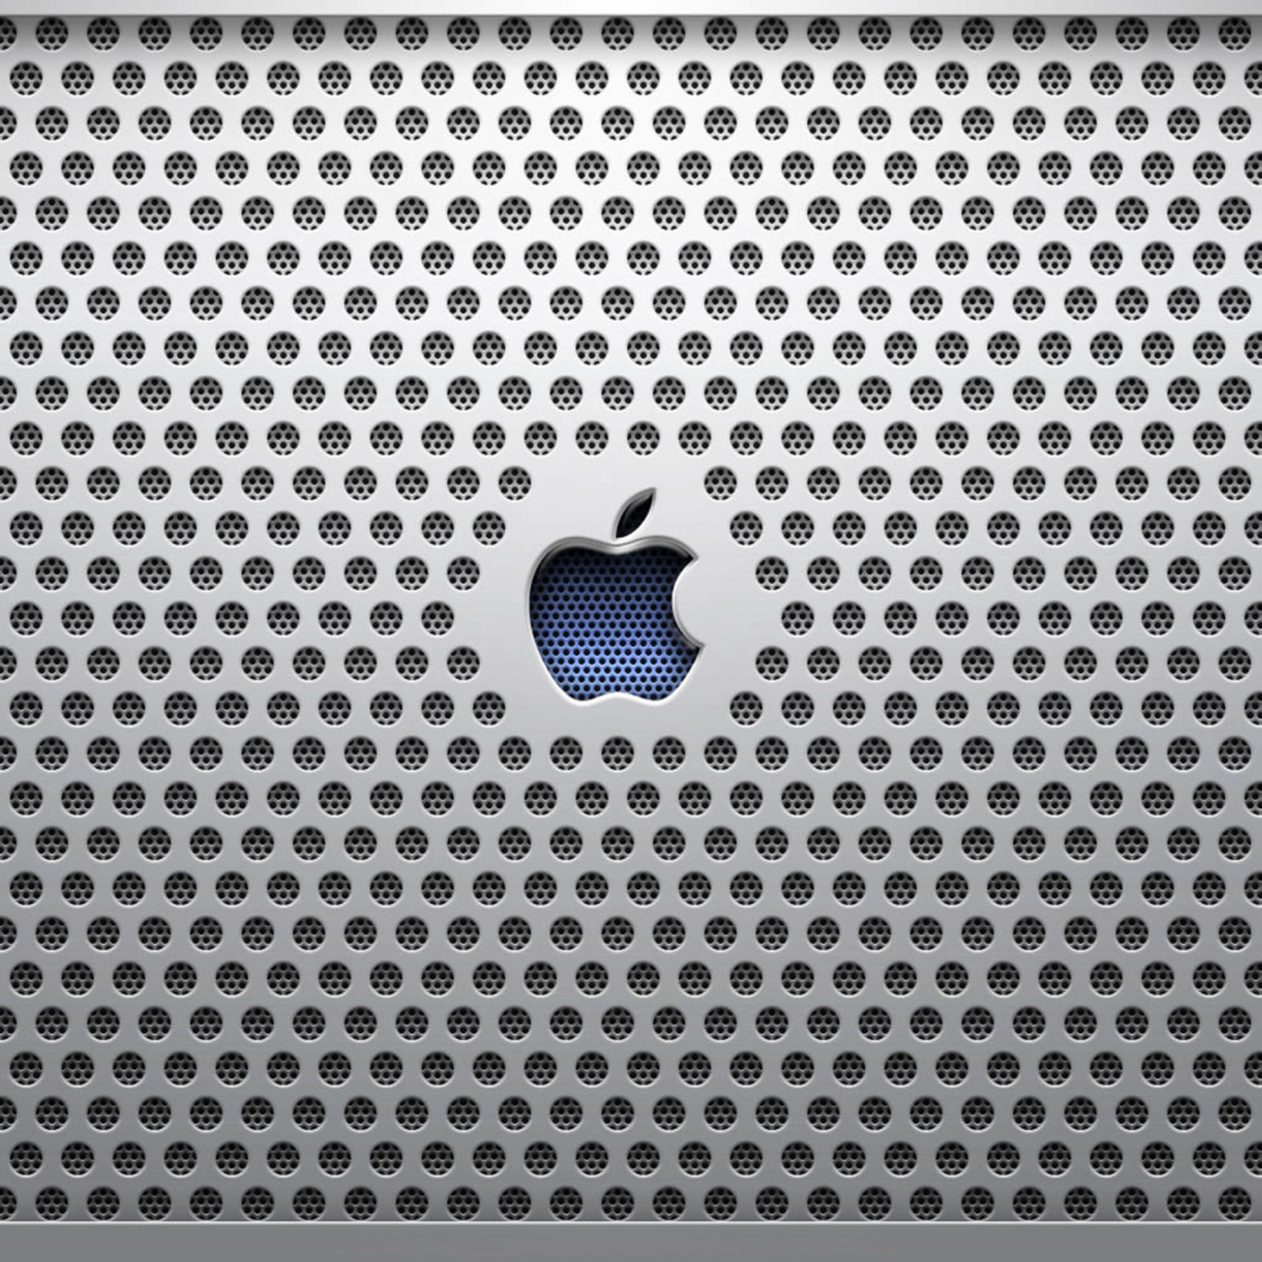 1262x1262 Parallax wallpaper 4k Apple Industrial Ipad Wallpaper 1262x1262 pixels resolution